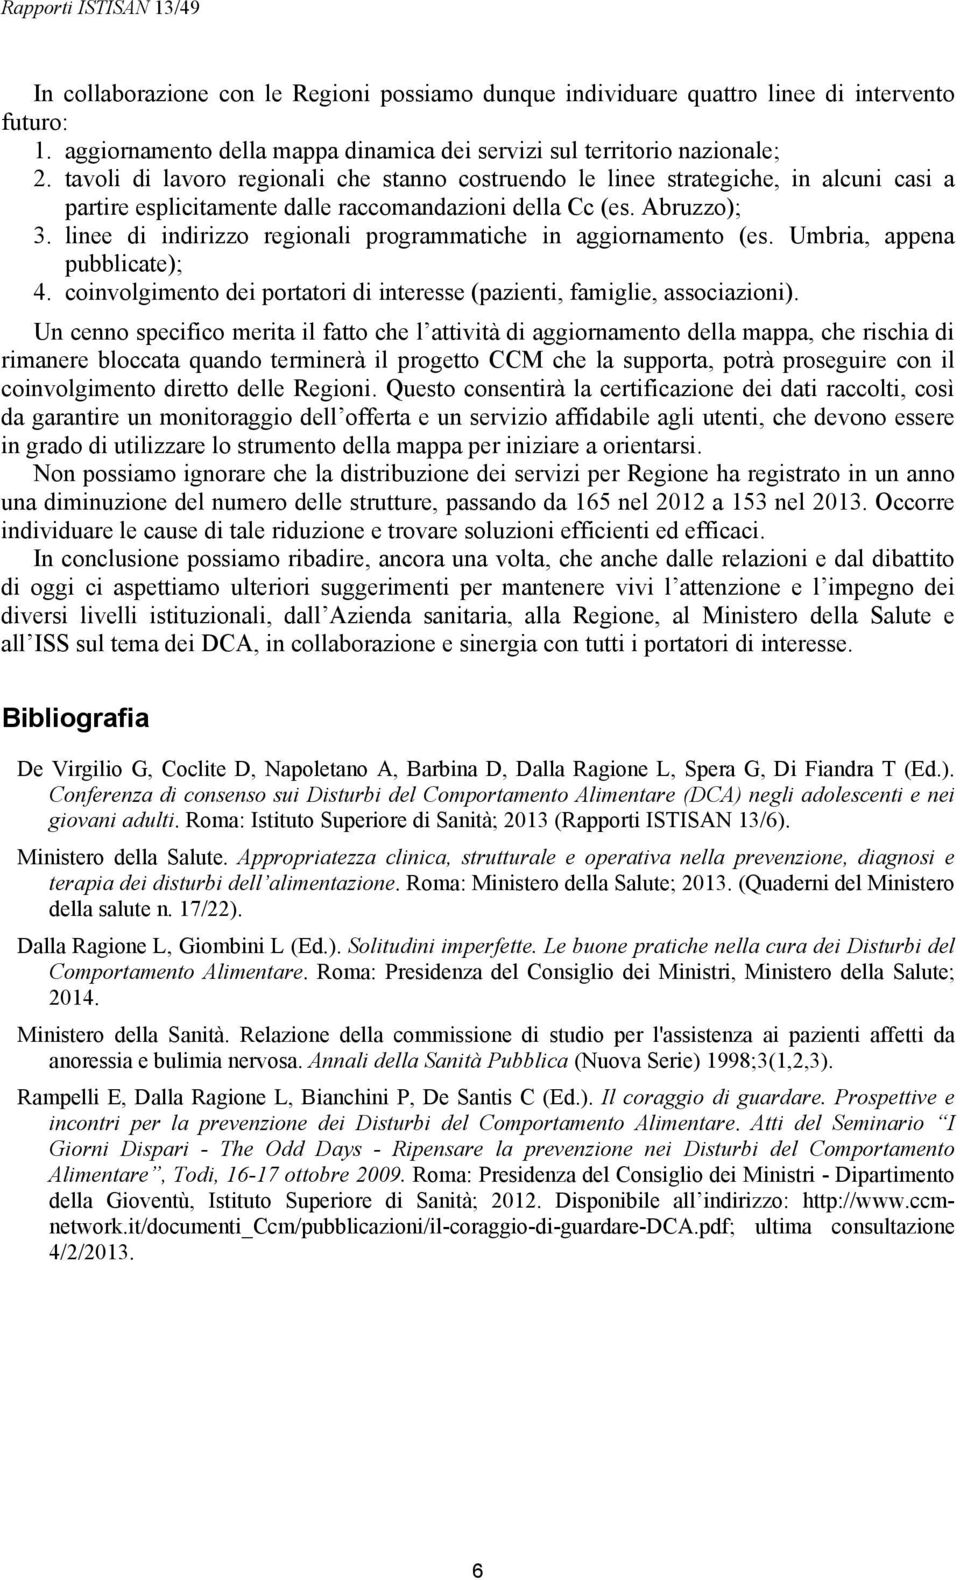 linee di indirizzo regionali programmatiche in aggiornamento (es. Umbria, appena pubblicate); 4. coinvolgimento dei portatori di interesse (pazienti, famiglie, associazioni).